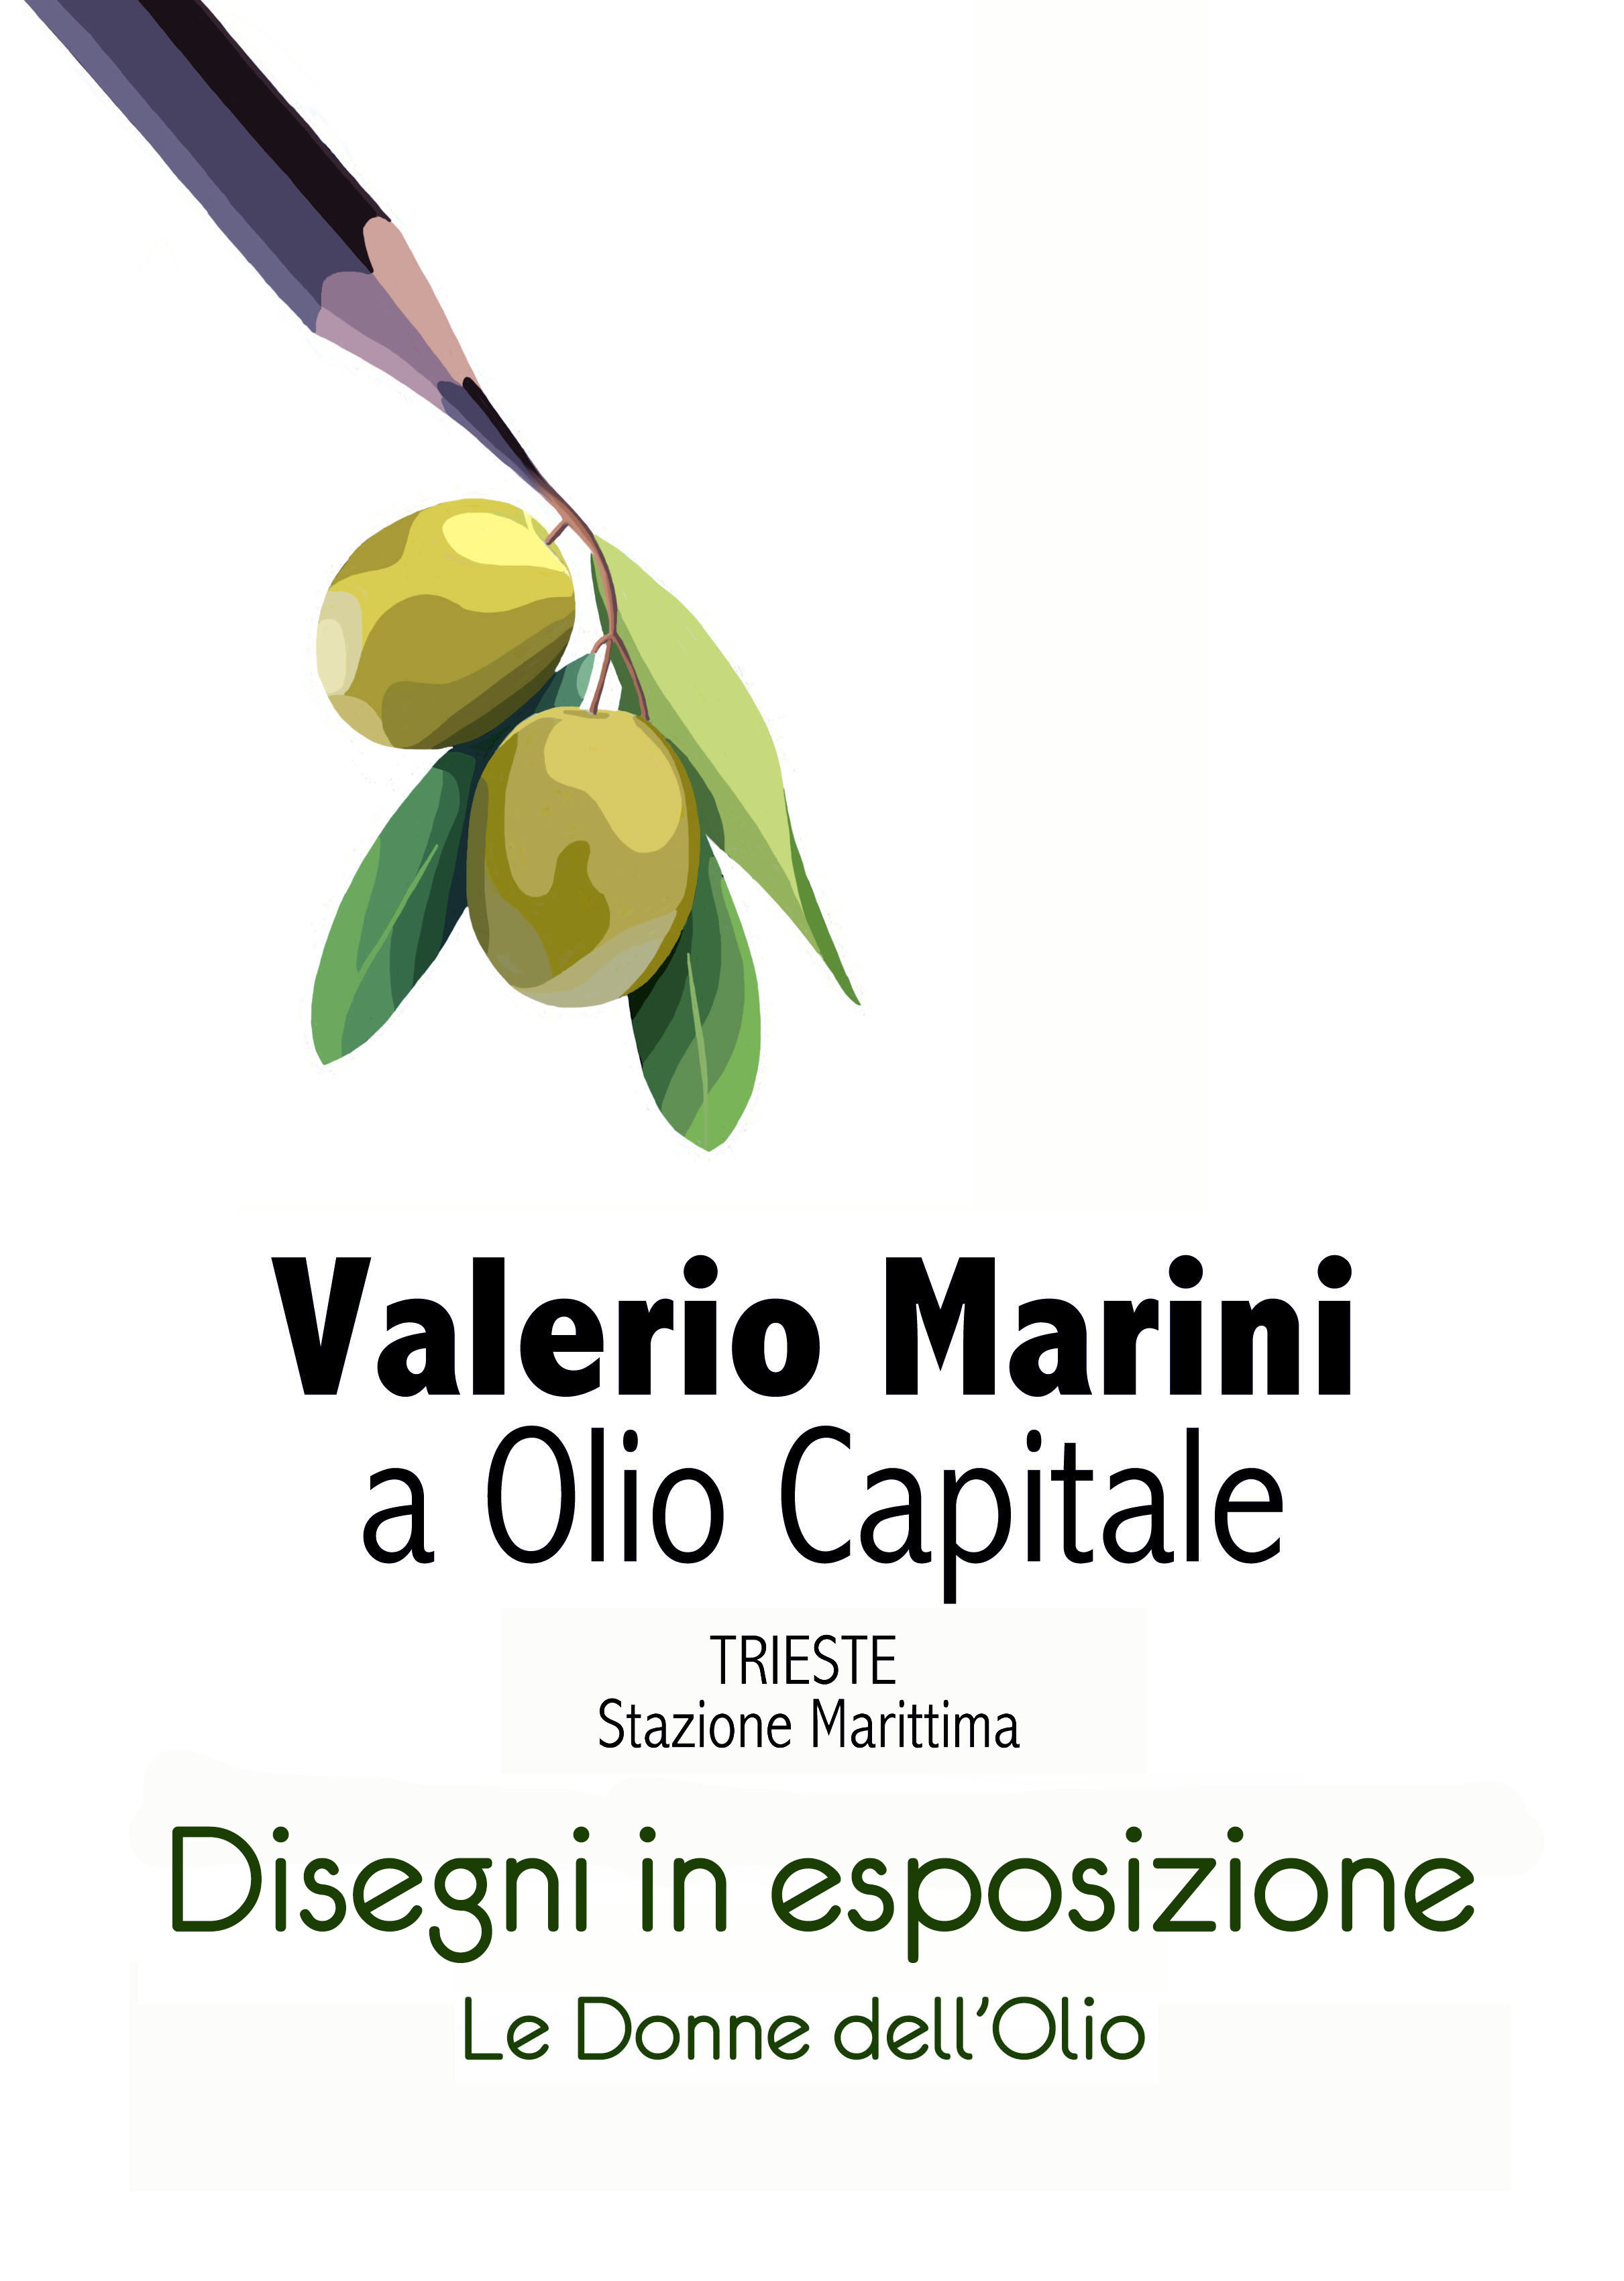 VALERIO MARINI